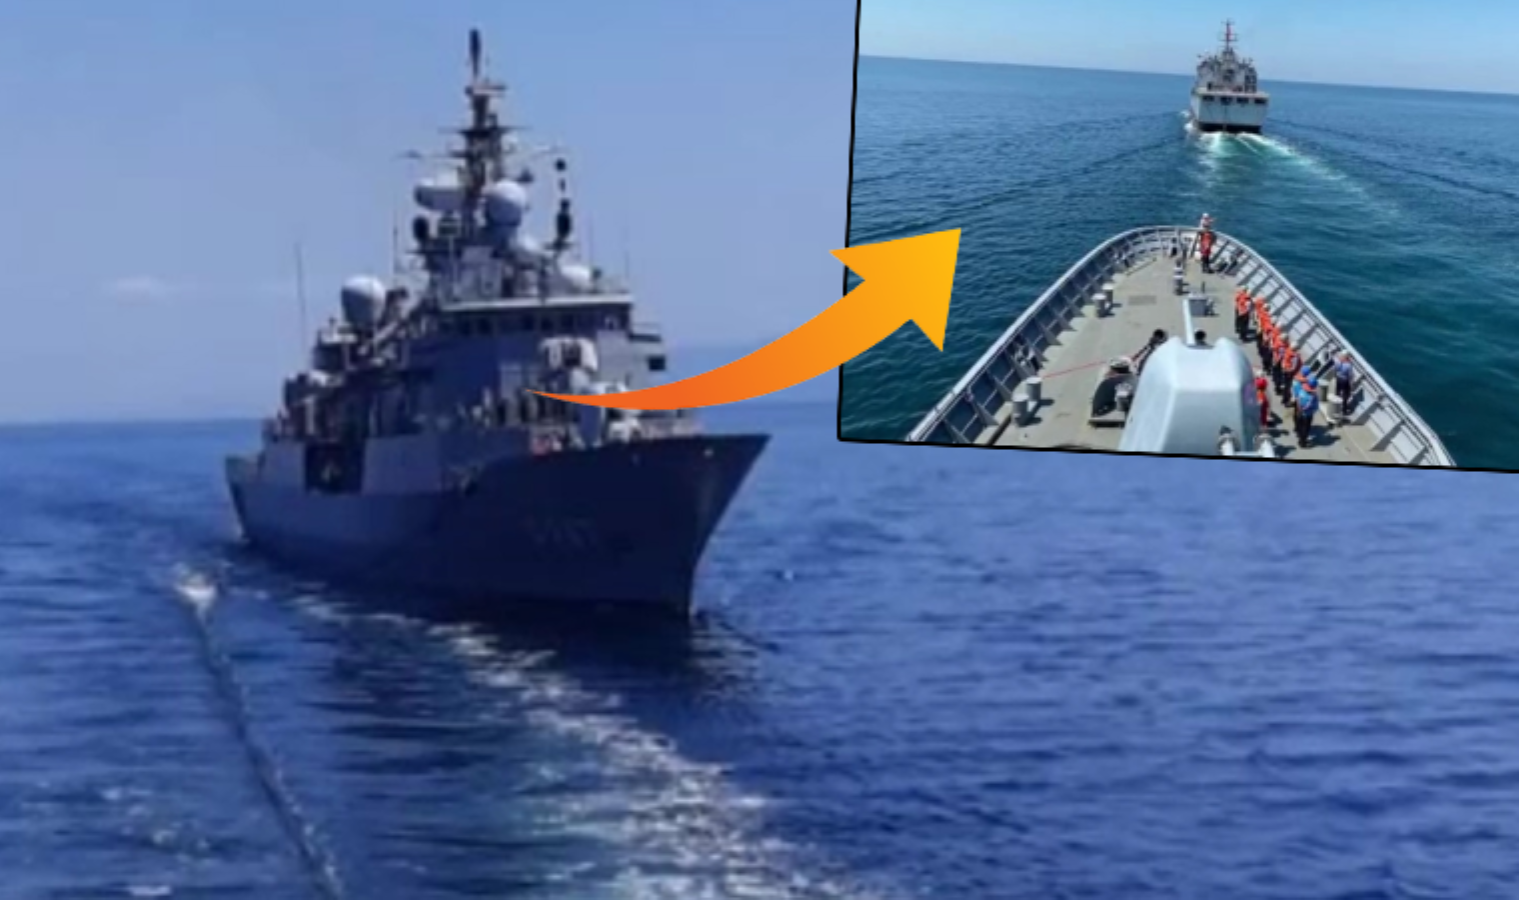 Marmara’da akaryakıt gemisi ile fırkateynin ilk defa kıçtan yüzdürmeli yakıt transferi gerçekleştirildi